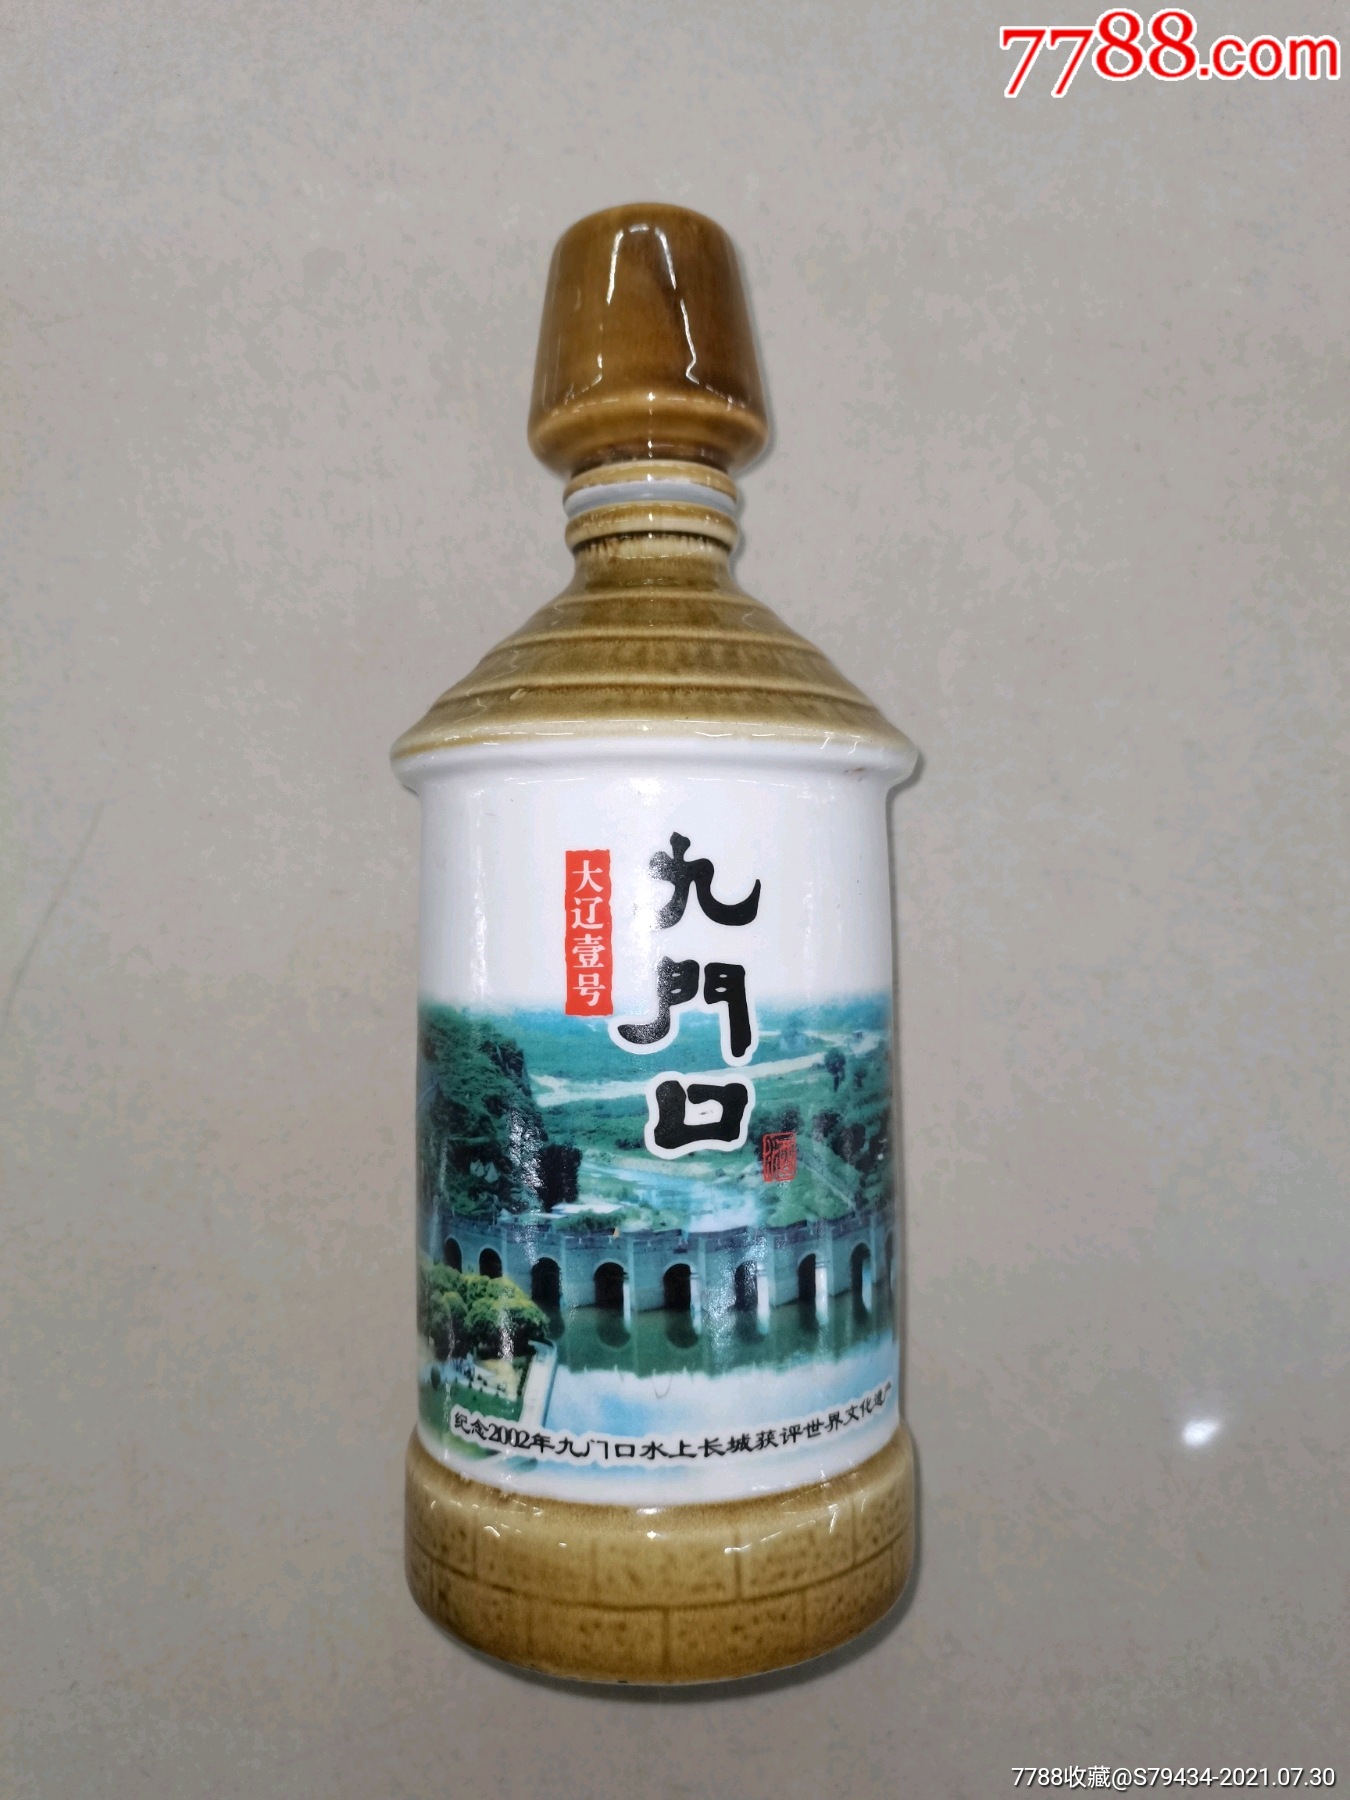 大辽壹号九门口酒瓶纪念2002年九门口水上长城获世界文化遗产具体看